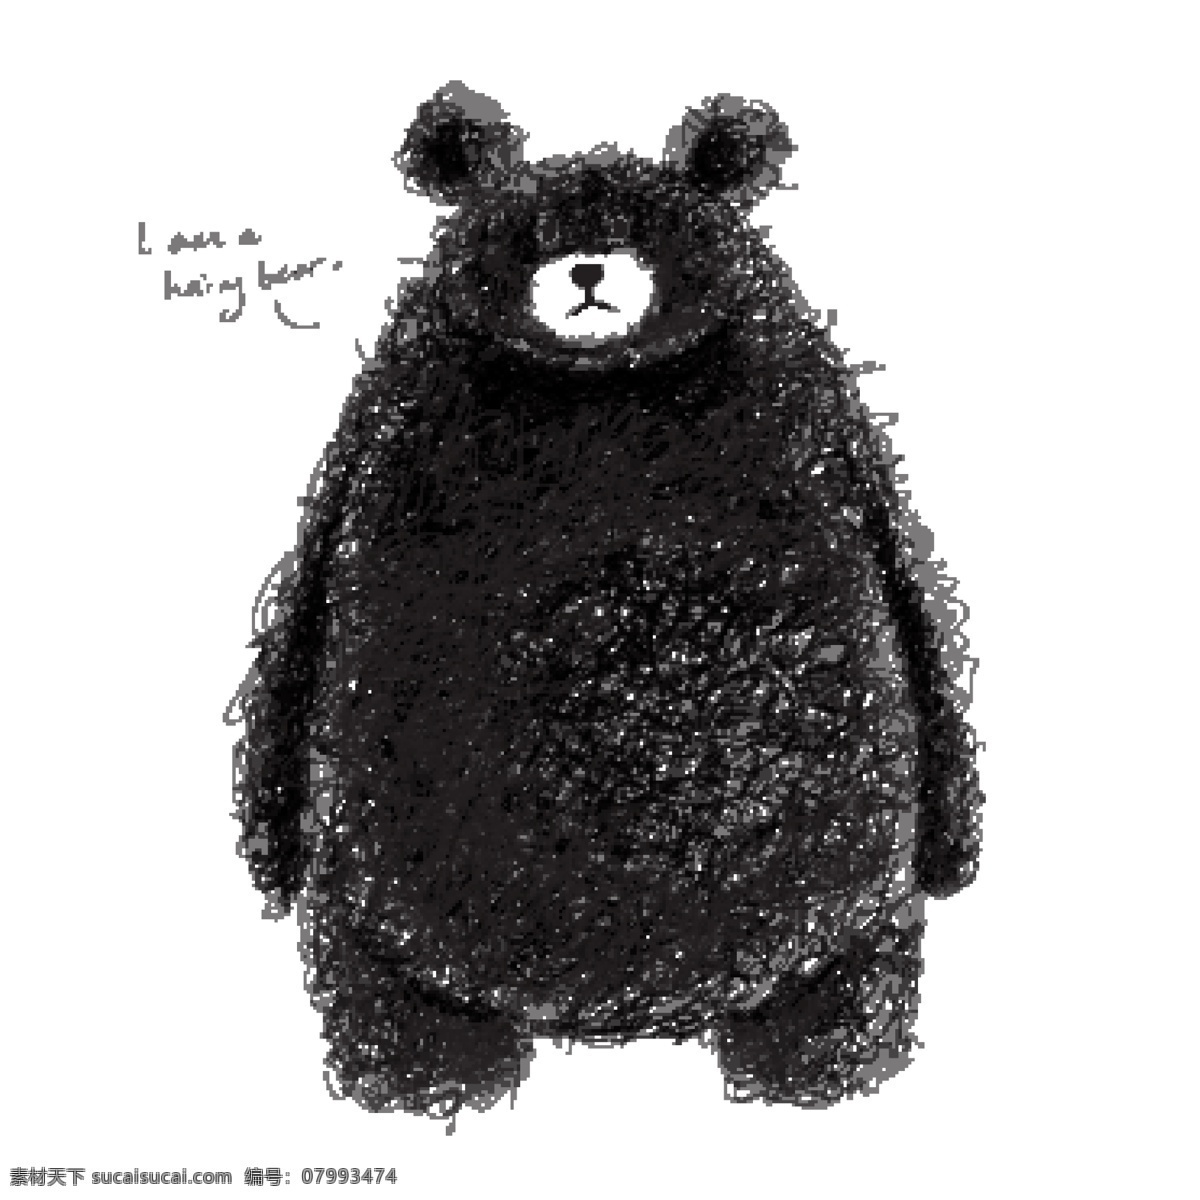 可爱 手绘 棕熊 矢量 eps格式 矢量图 泰迪熊 熊 线团熊